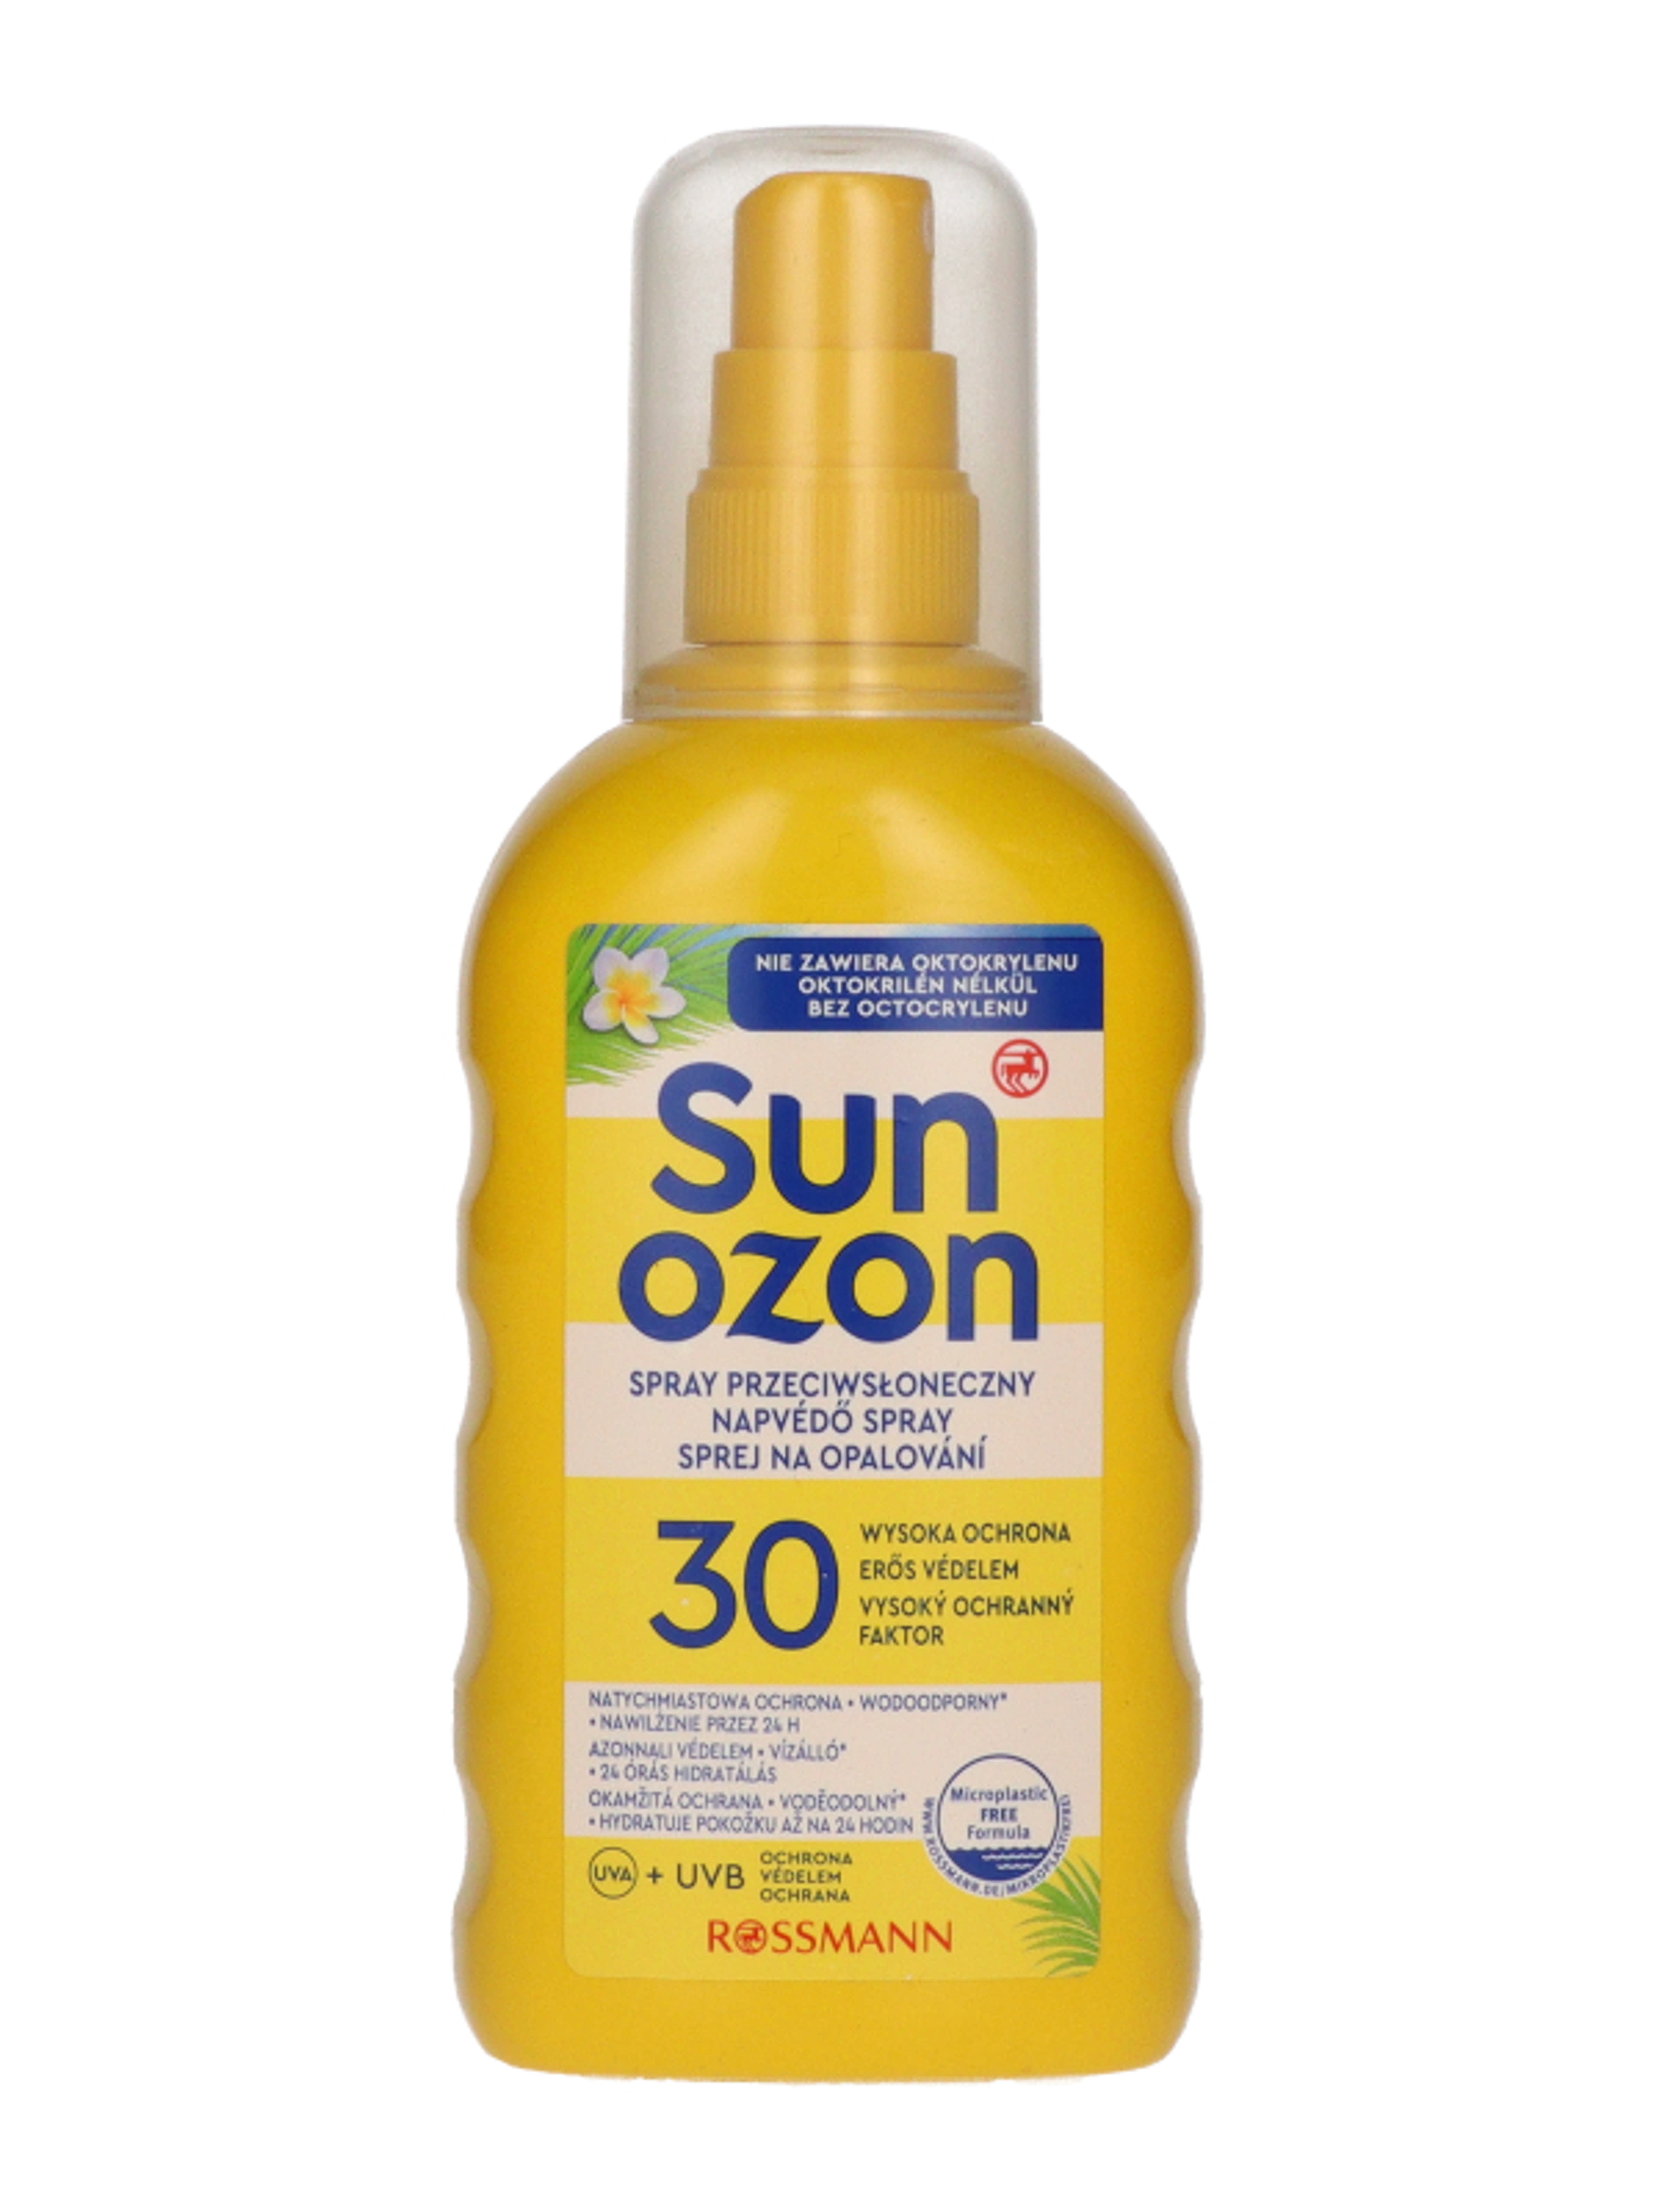 Sunozon napspray f30 - 200 ml